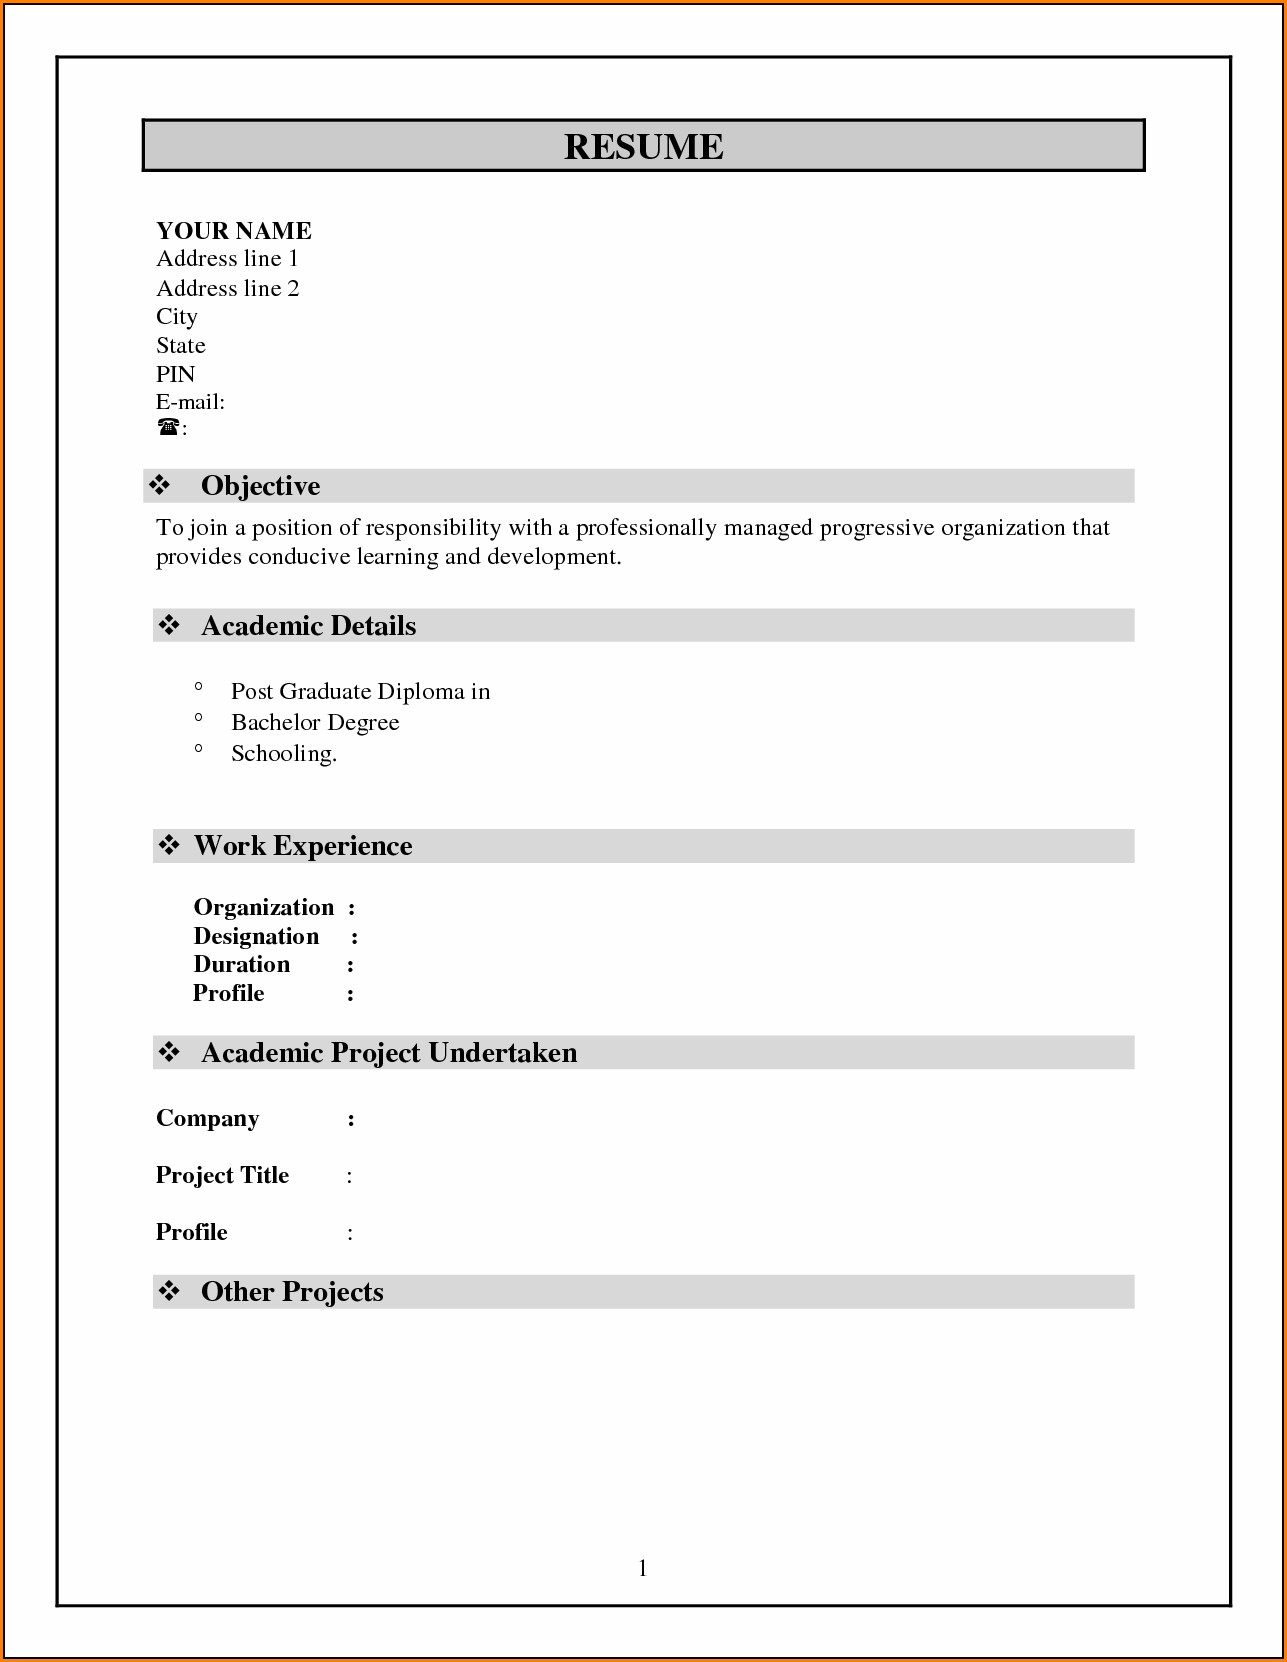 Resume Format Pdf Free Download